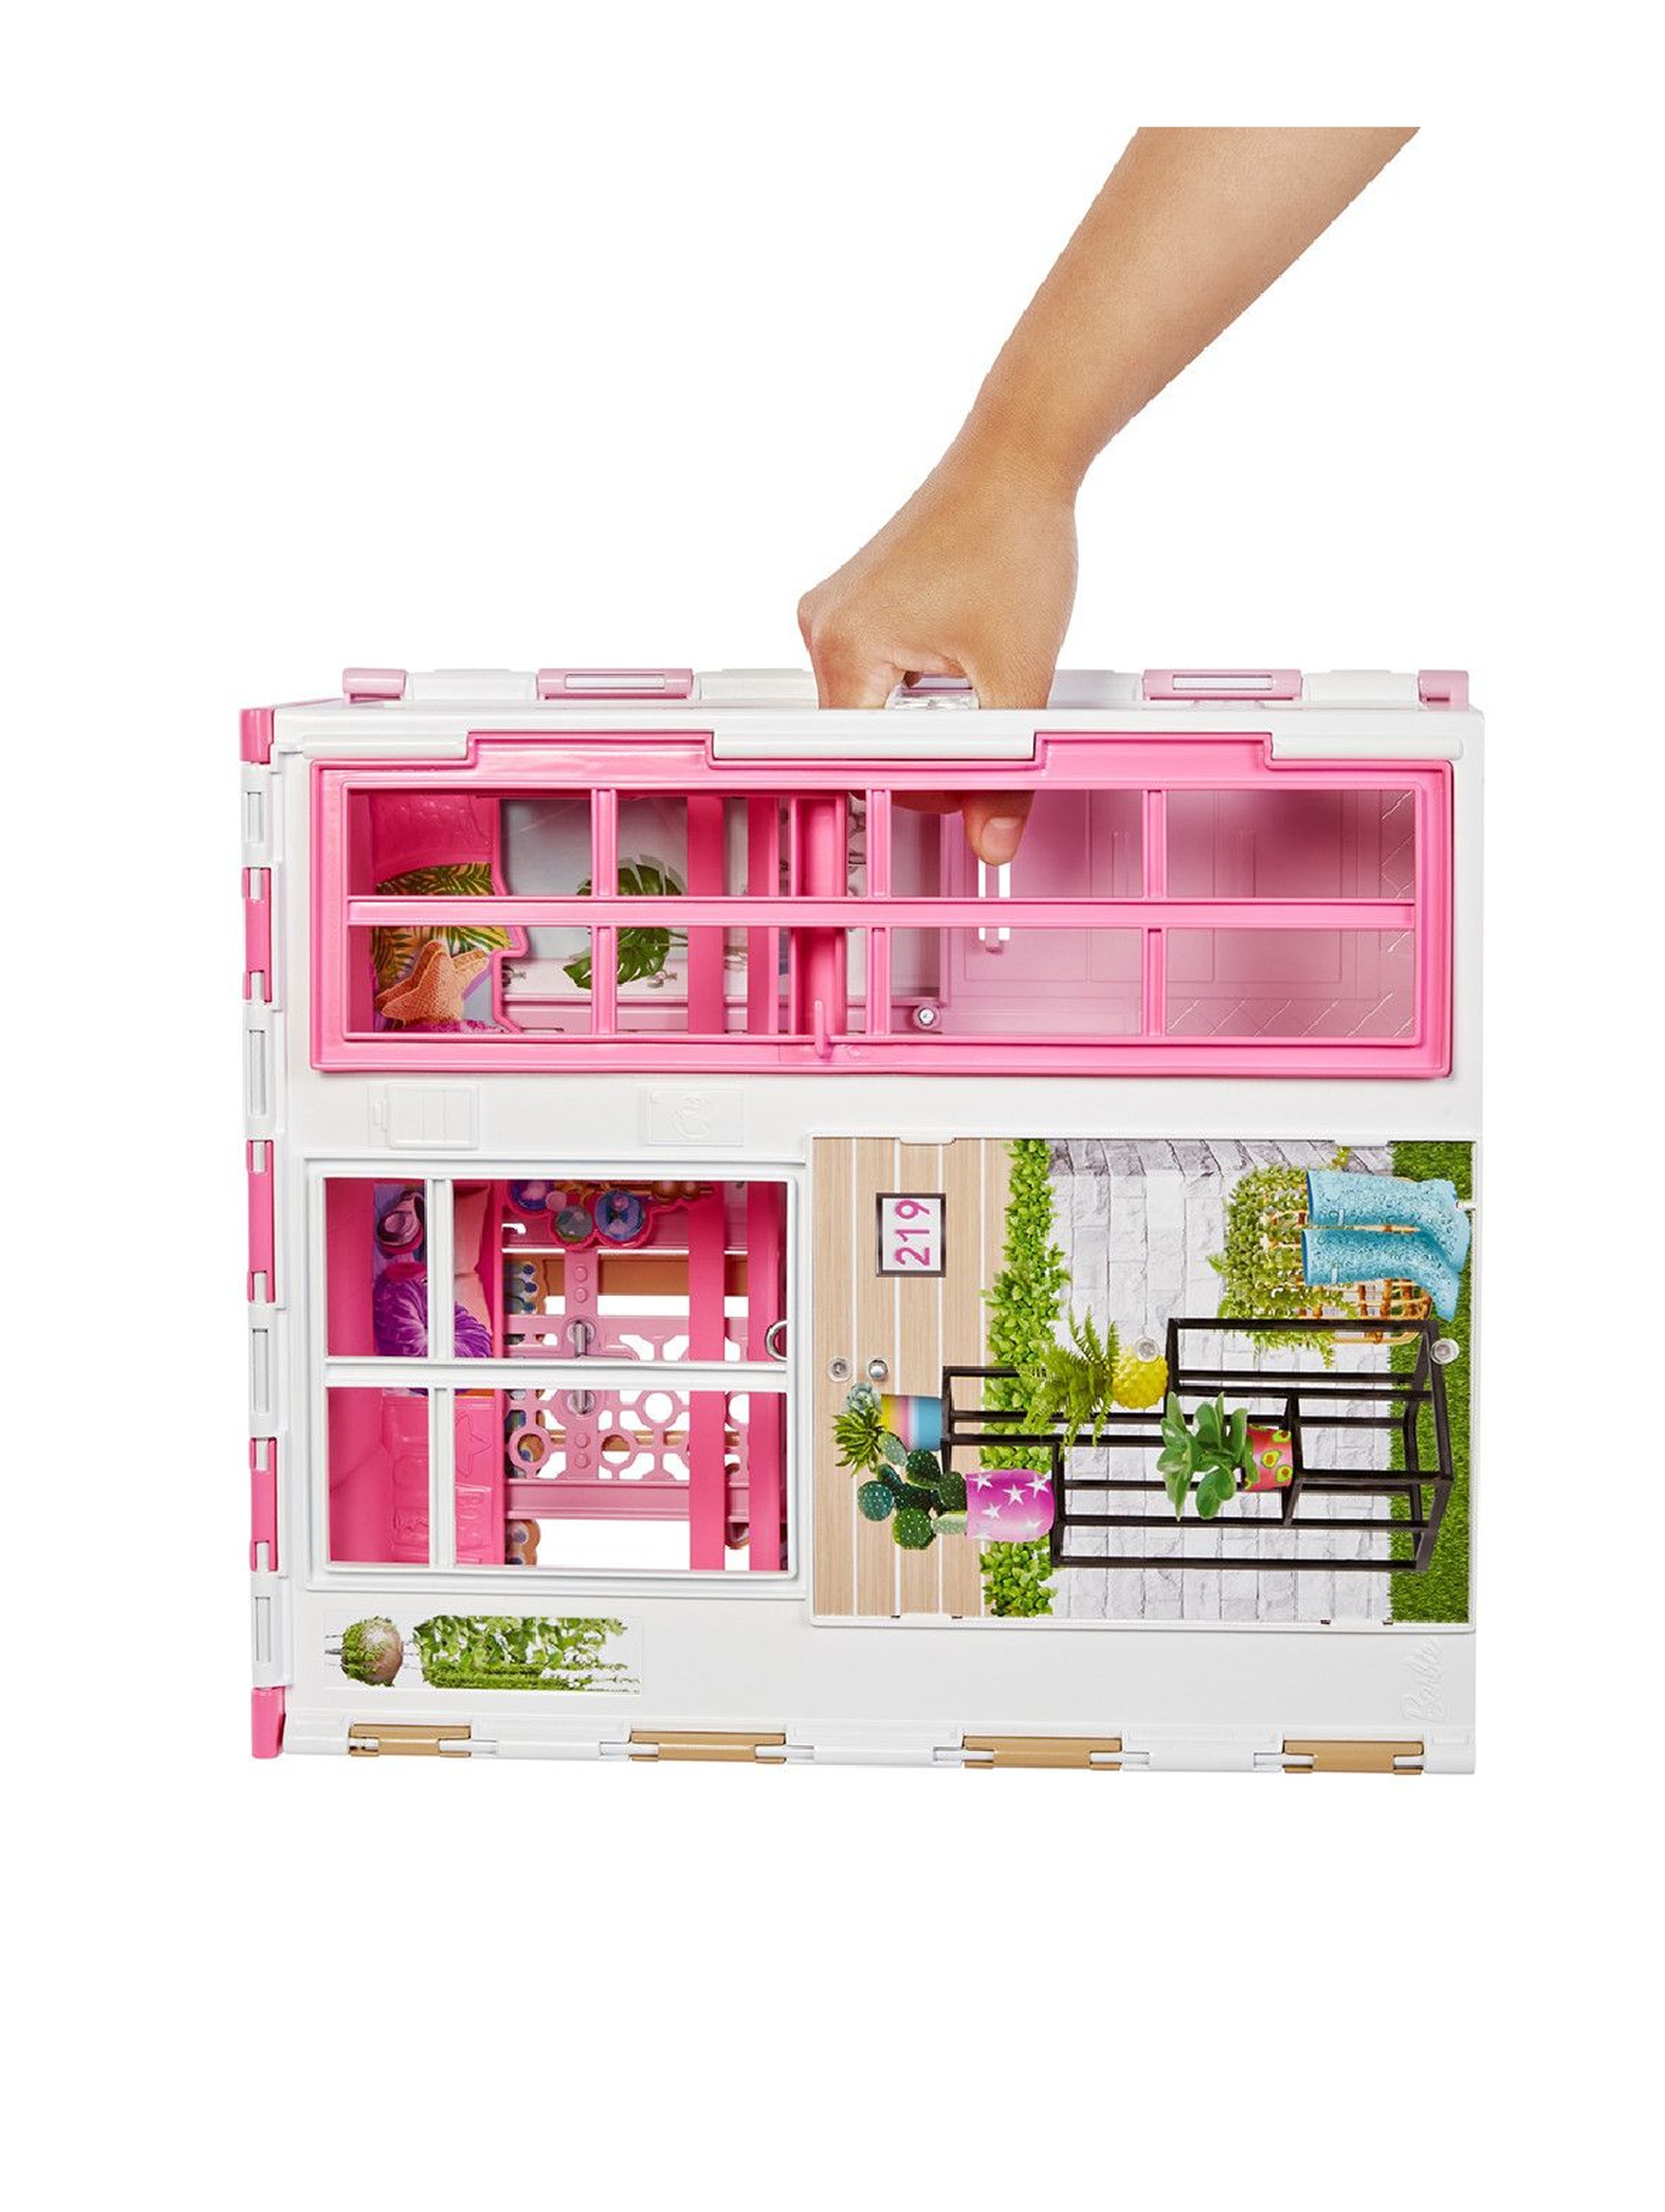 Barbie Kompaktowy domek dla lalek 3+